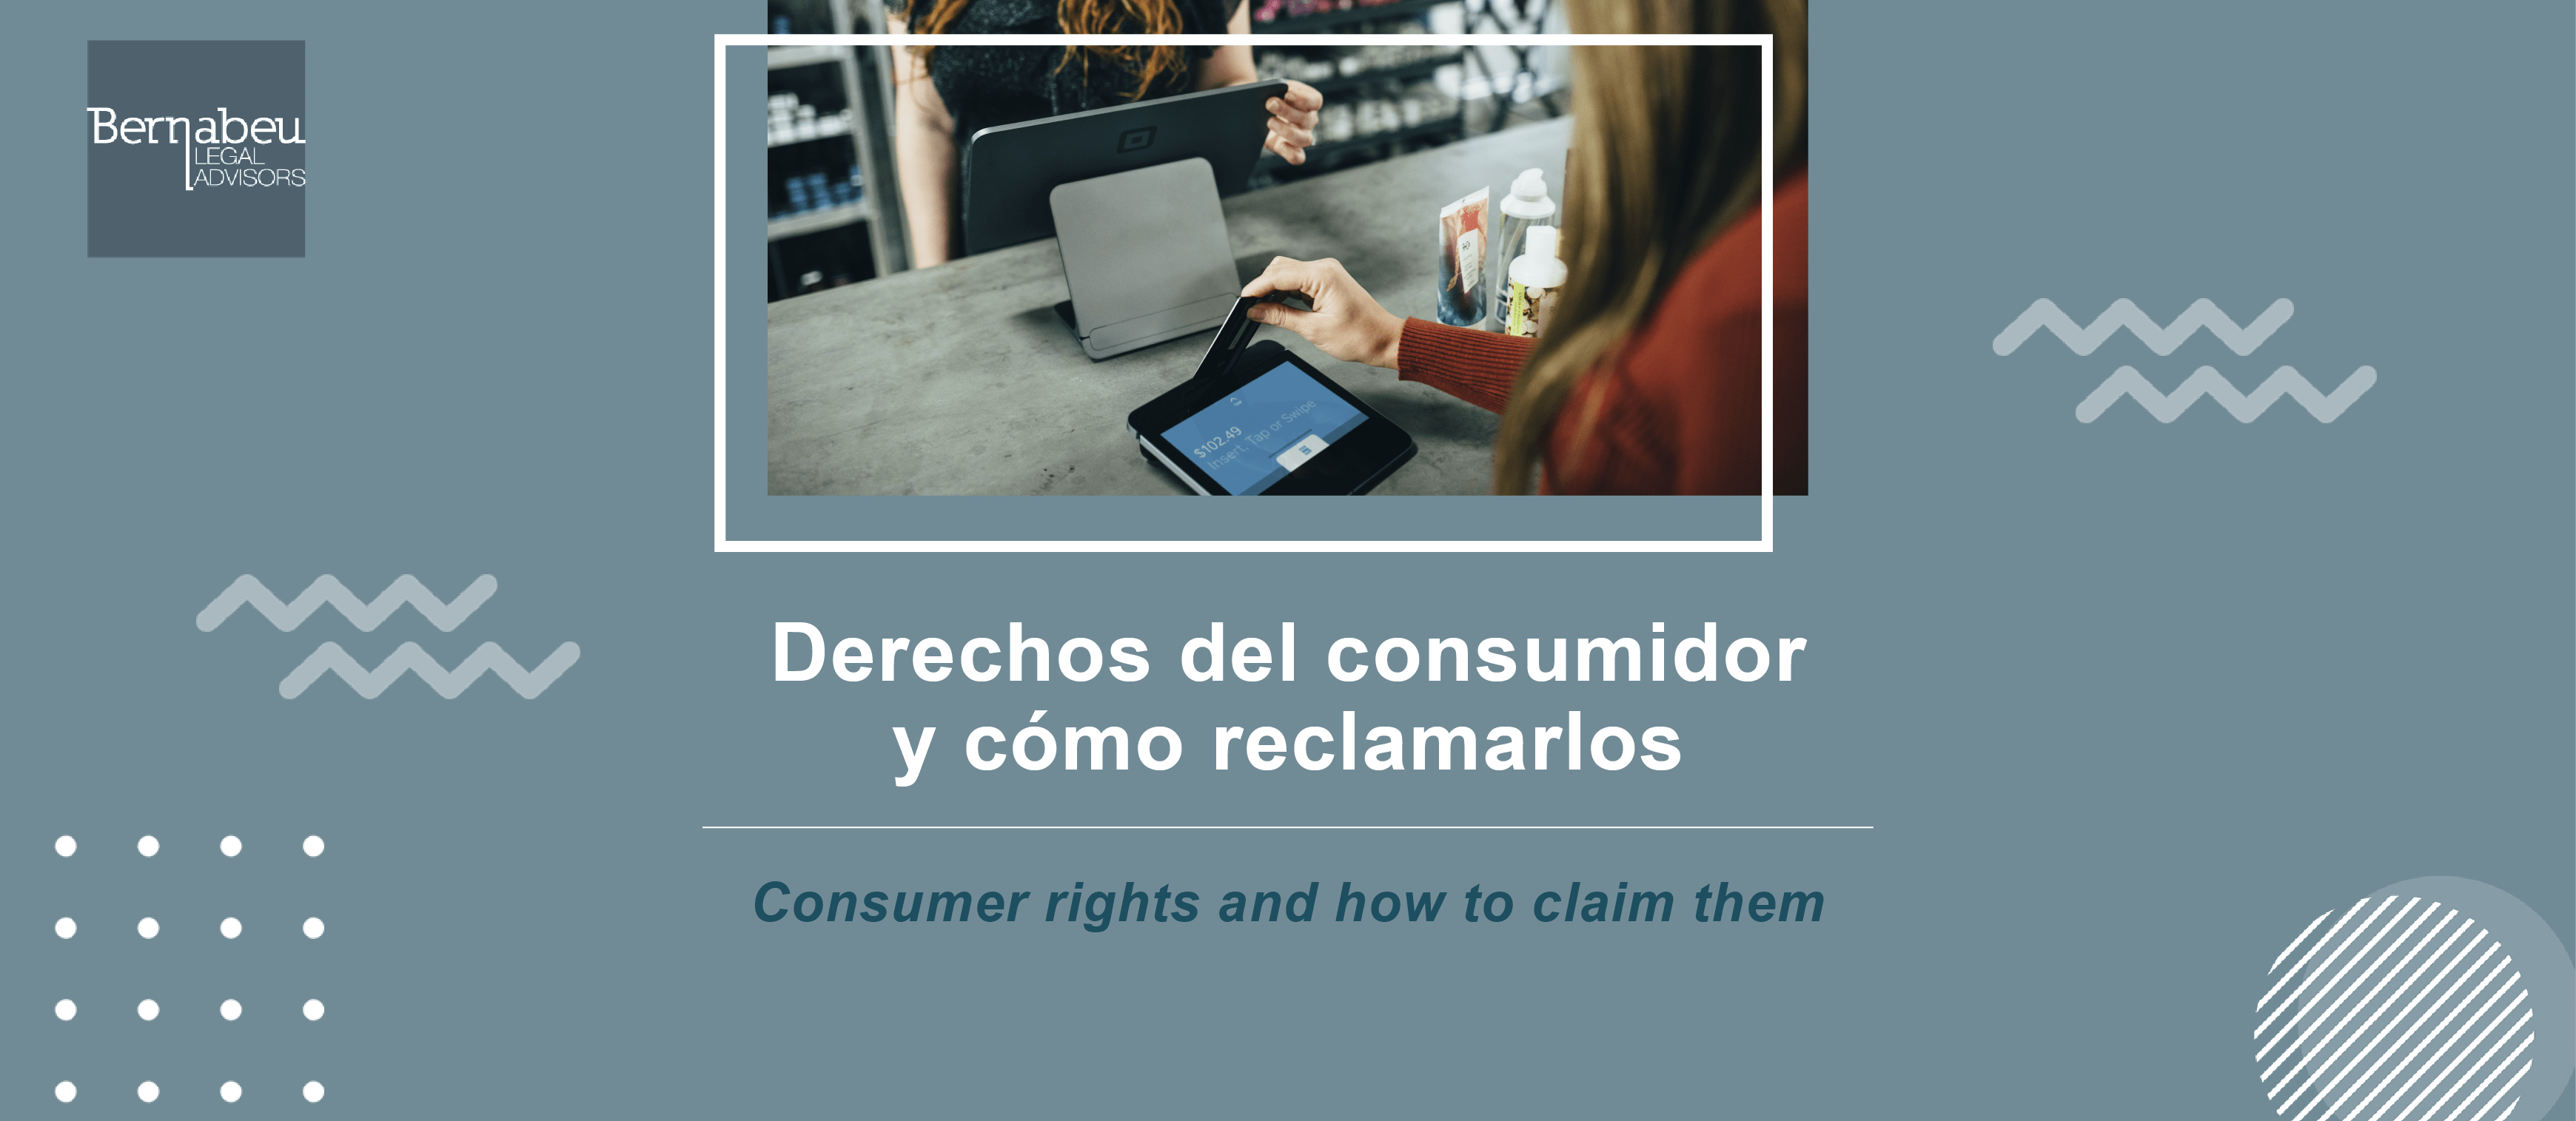 Derechos del consumidor